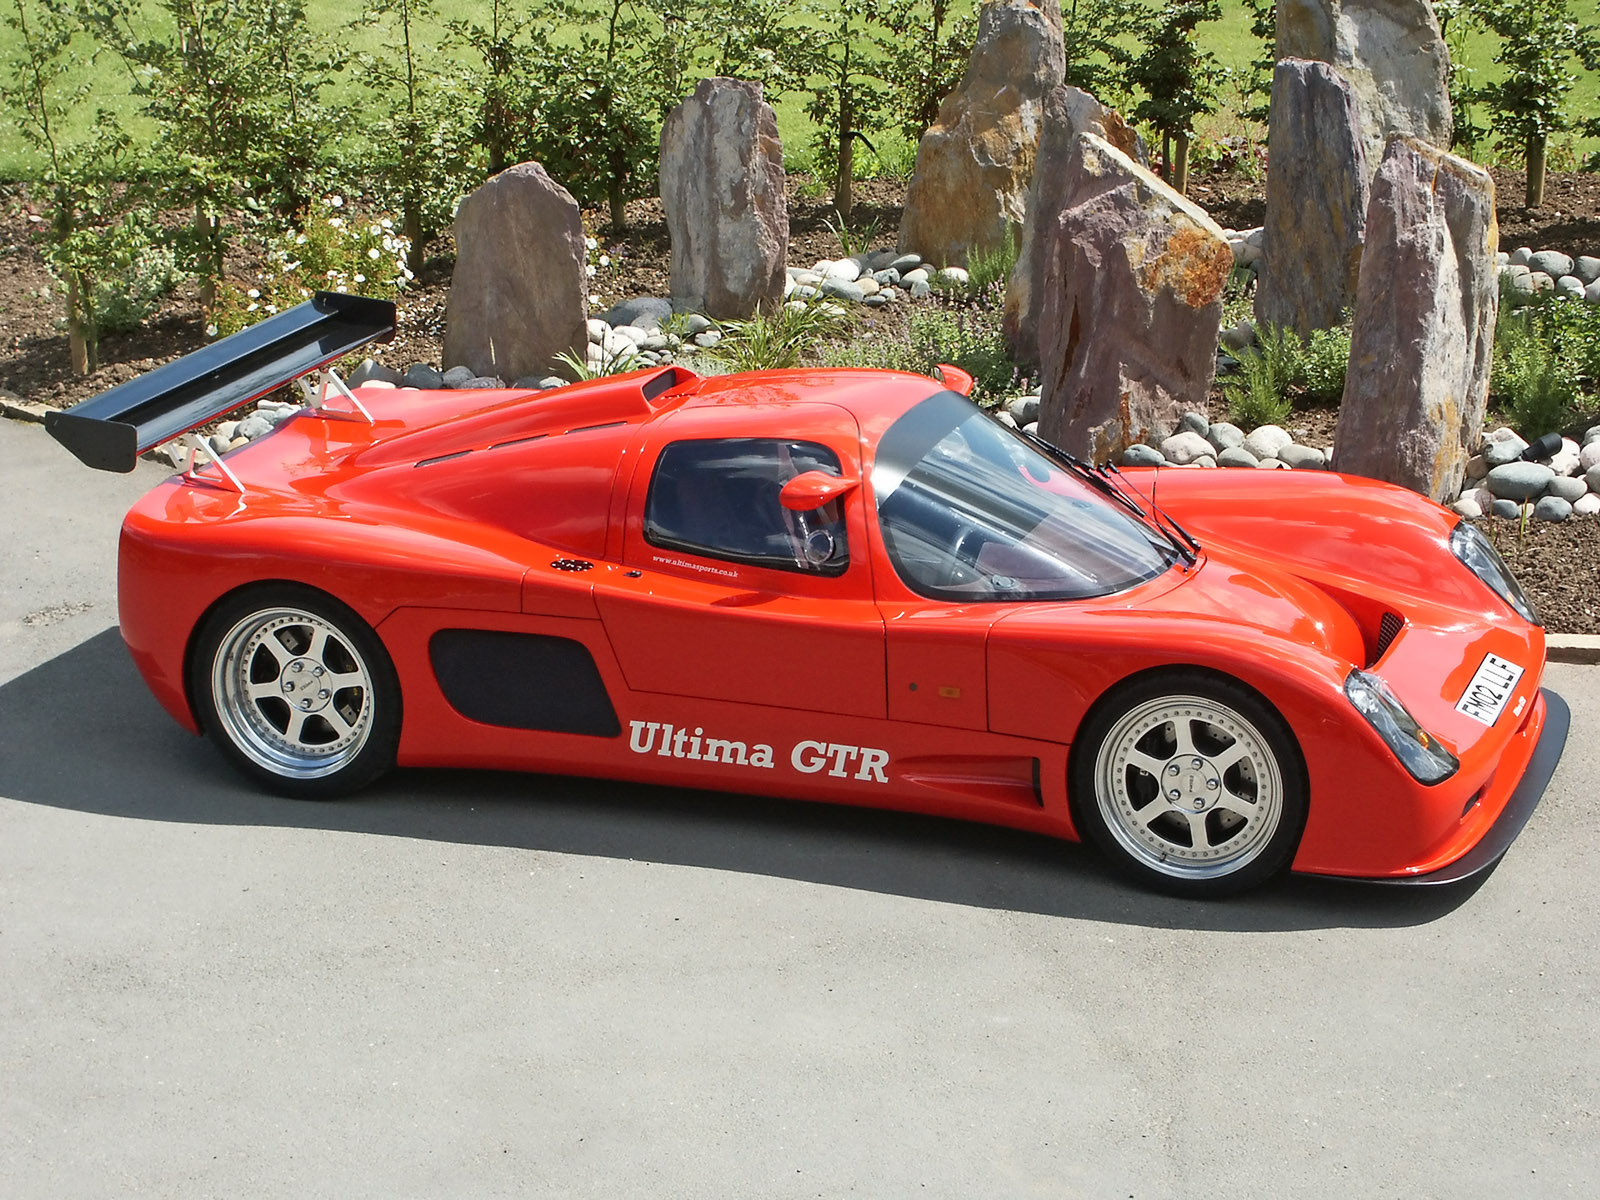 2000 Ultima GTR